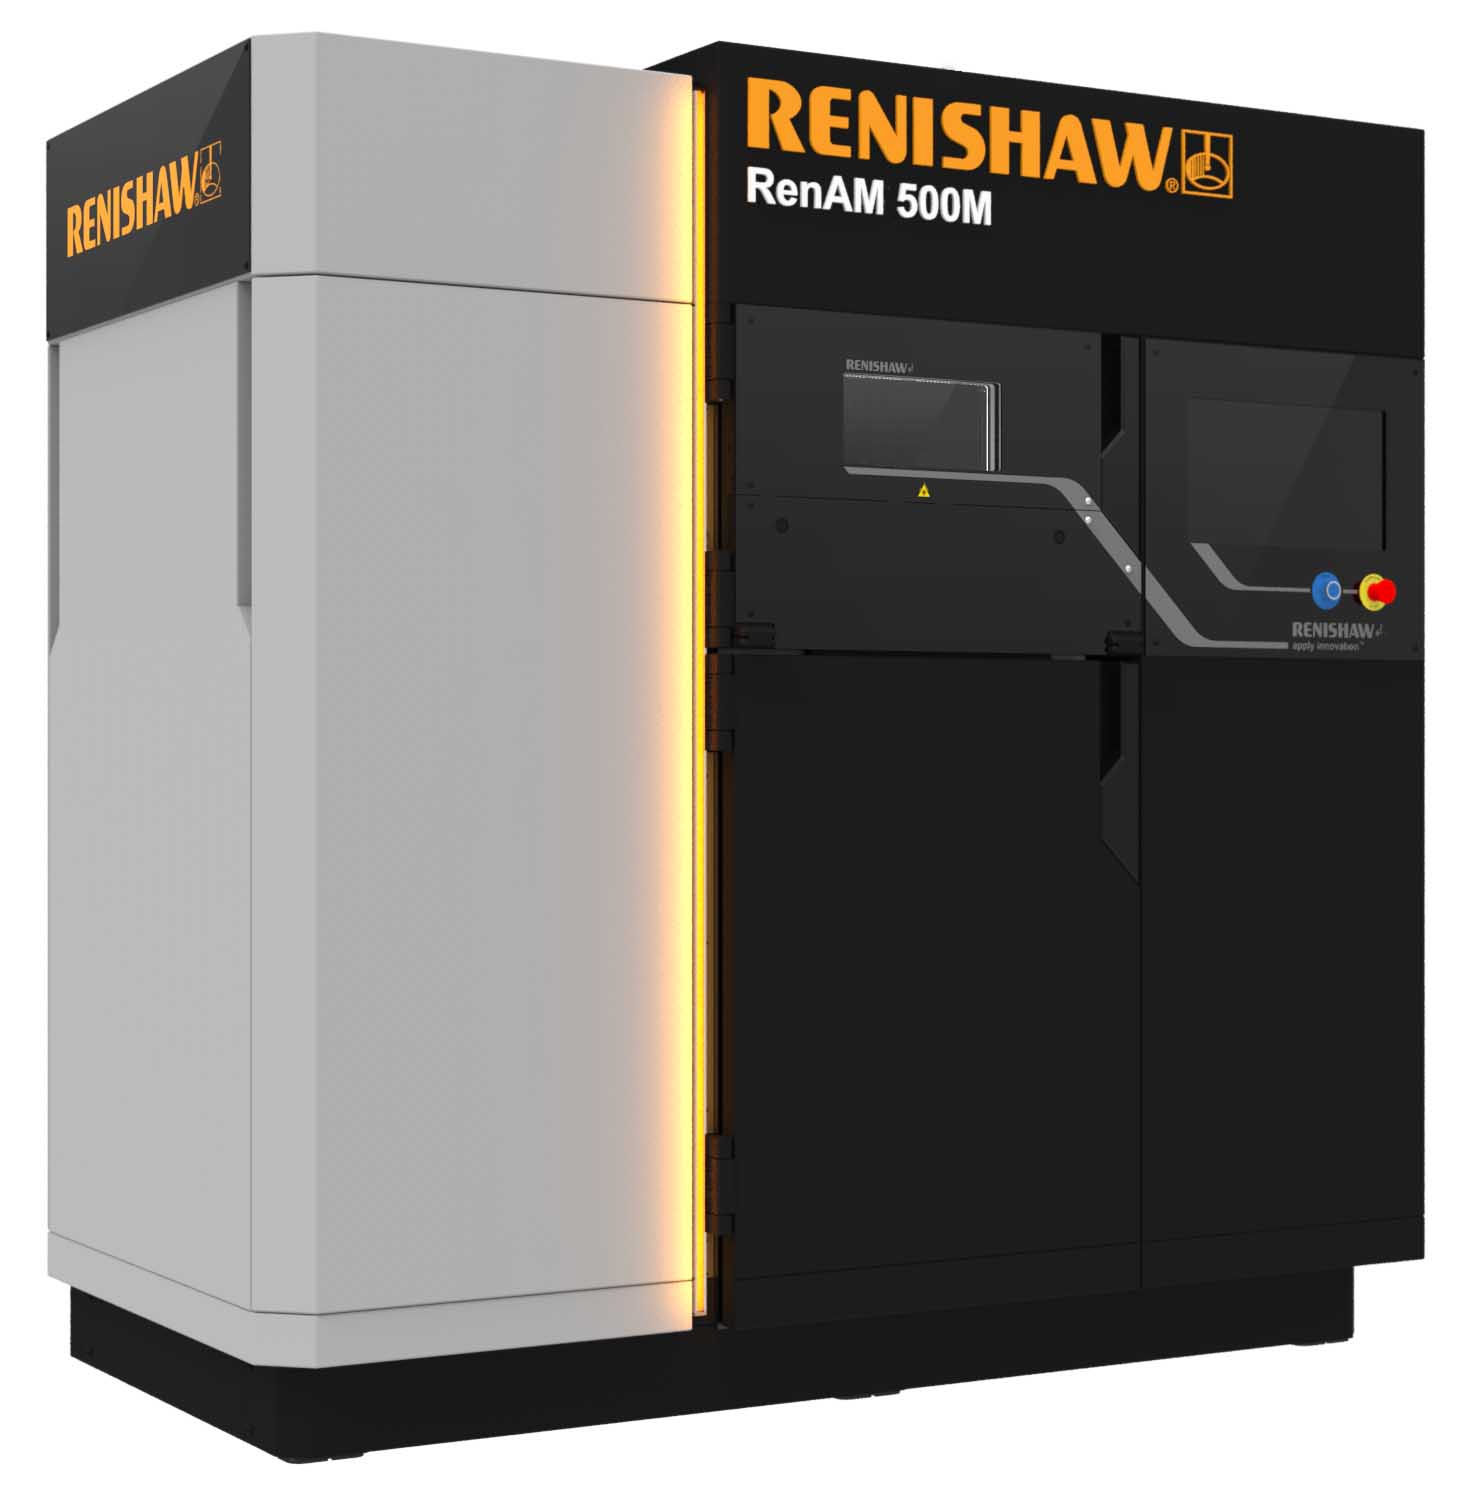 Renishaw machine